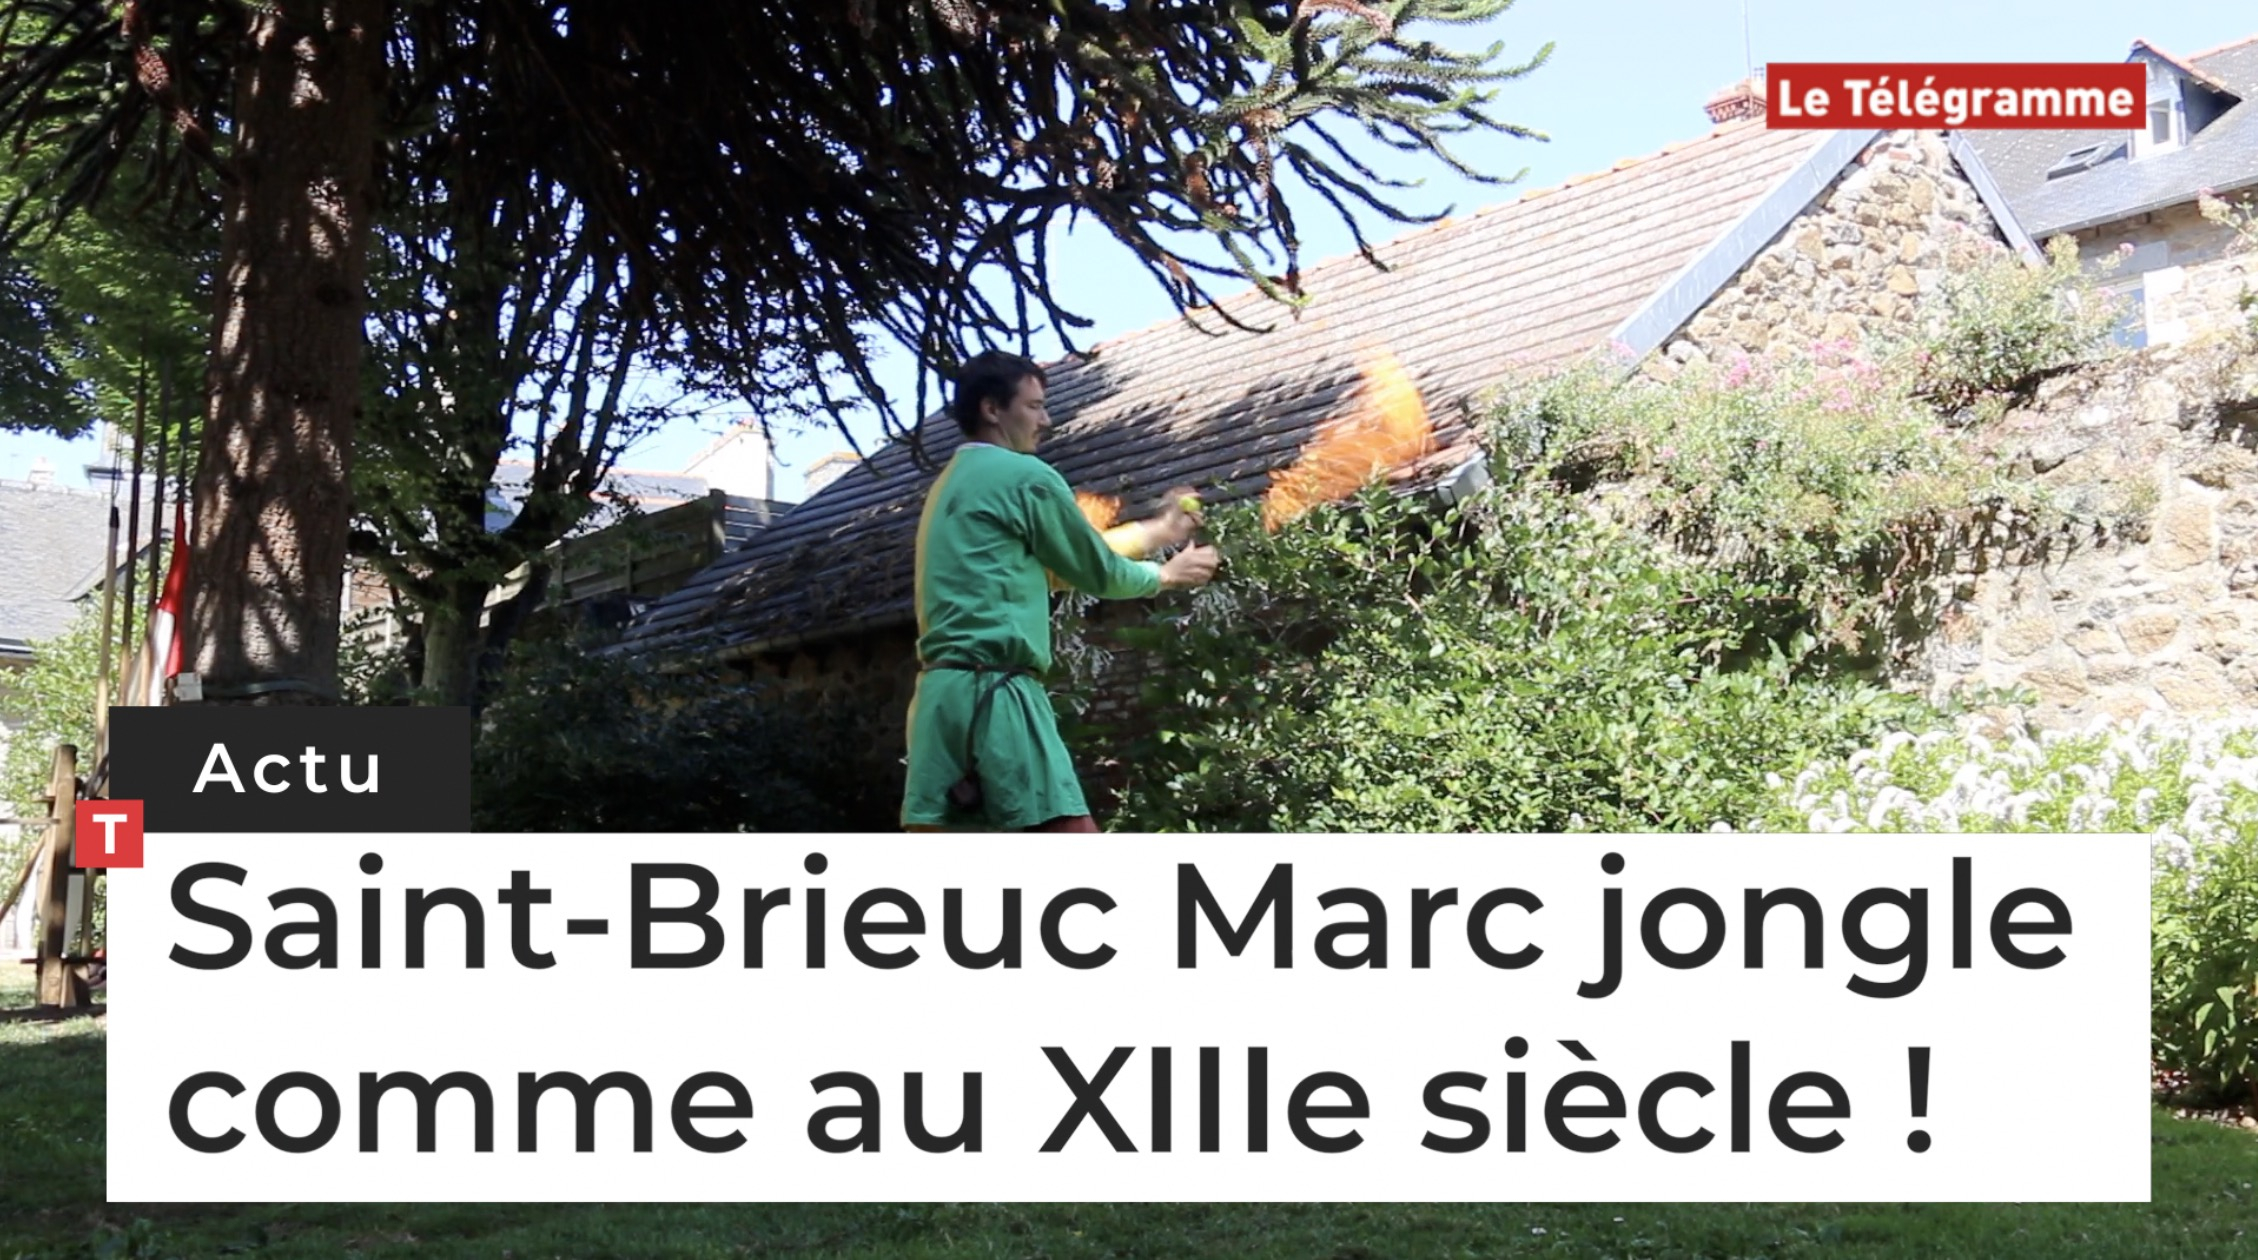 Saint-Brieuc. Marc jongle comme au XIIIe siècle ! (Le Télégramme)